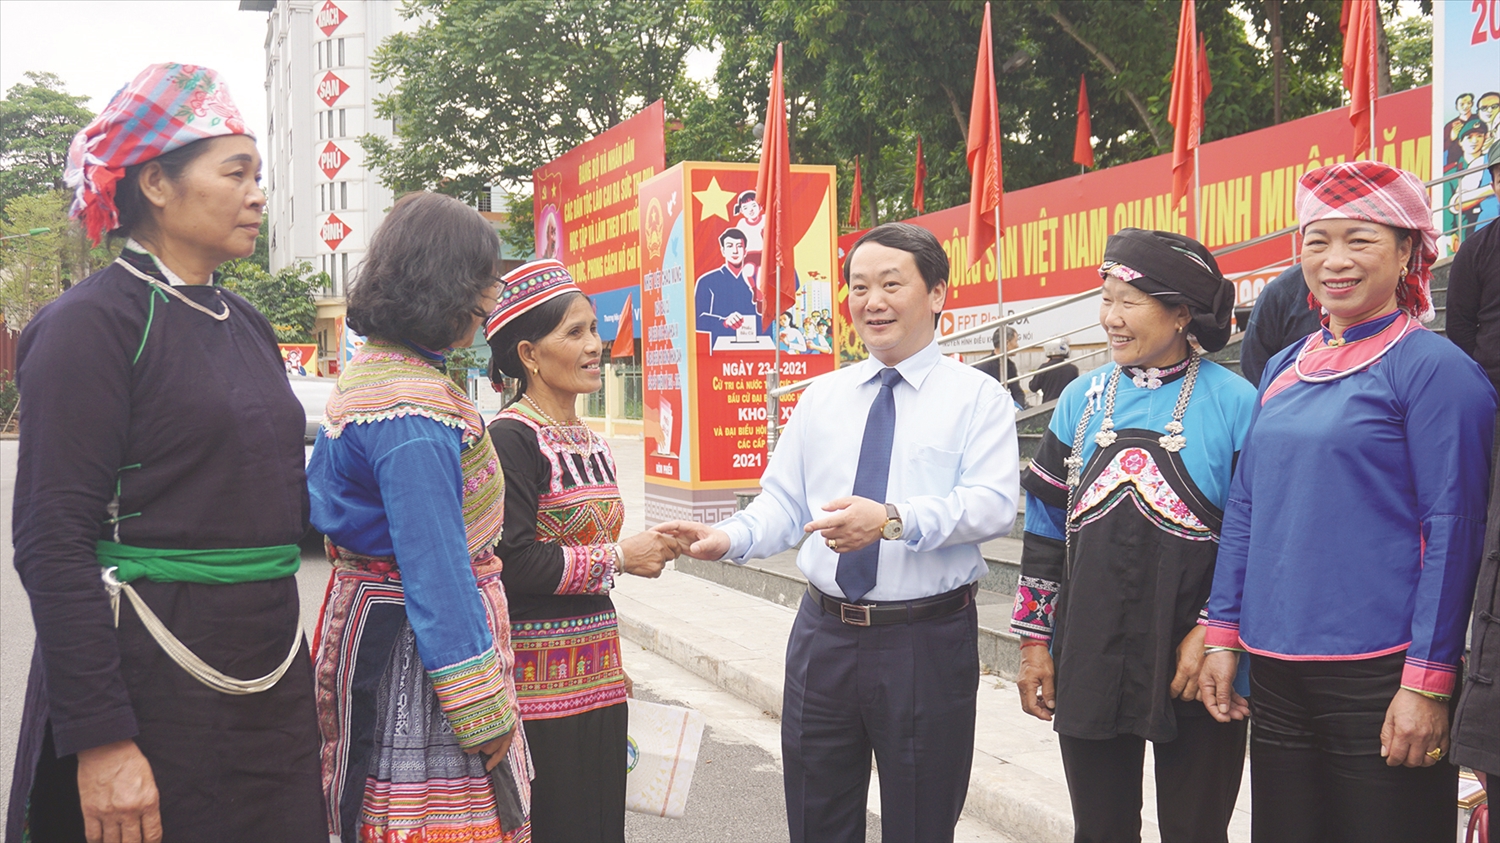 Bộ trưởng, Chủ nhiệm UBDT Hầu A Lềnh trò chuyện với đại biểu là Người có uy tín tỉnh Lào Cai nhân Hội nghị biểu dương Người có uy tín và người DTTS tiêu biểu tỉnh Lào Cai năm 2021